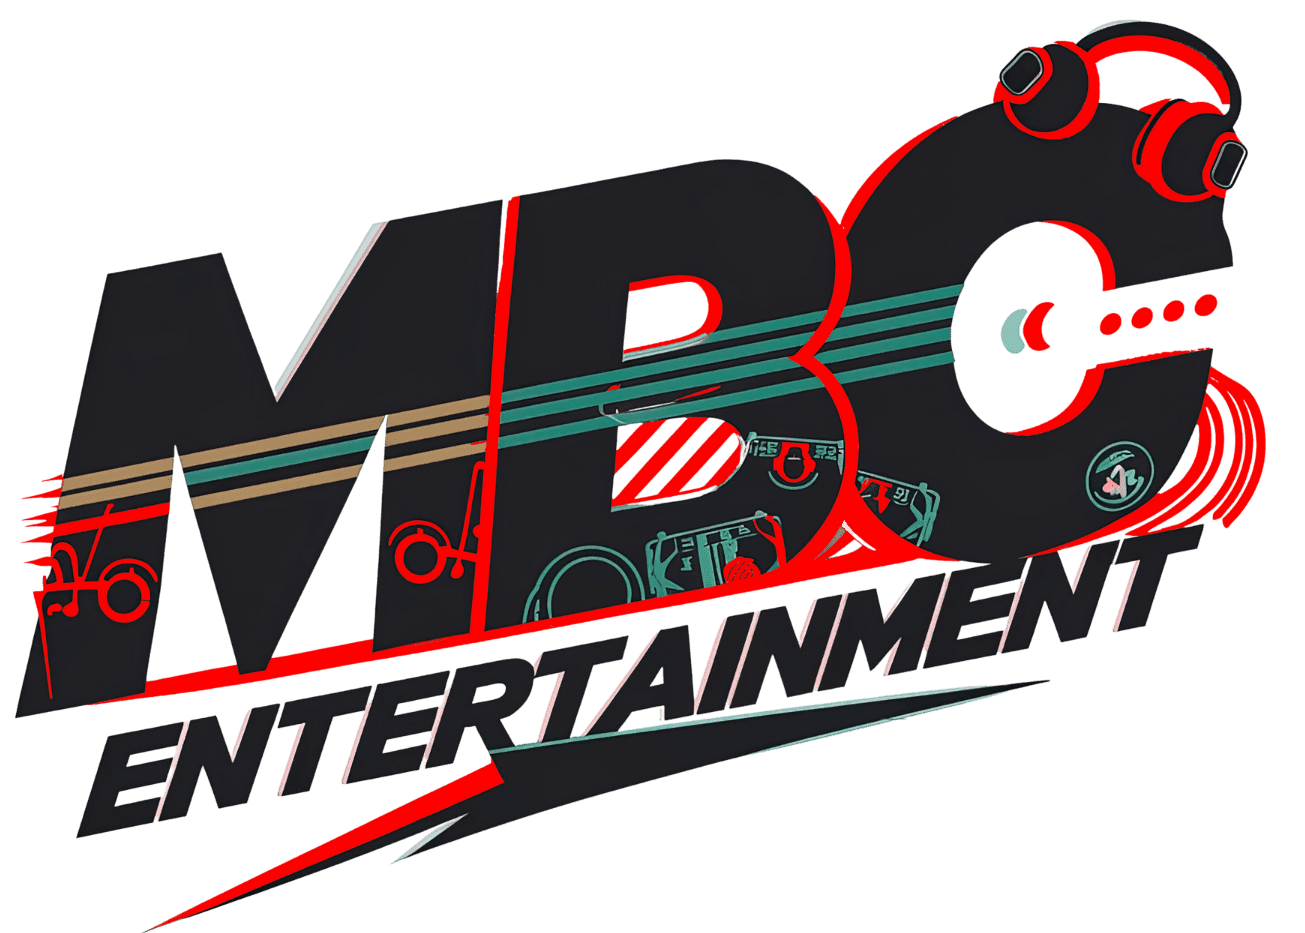 MBC Entertainment Inc